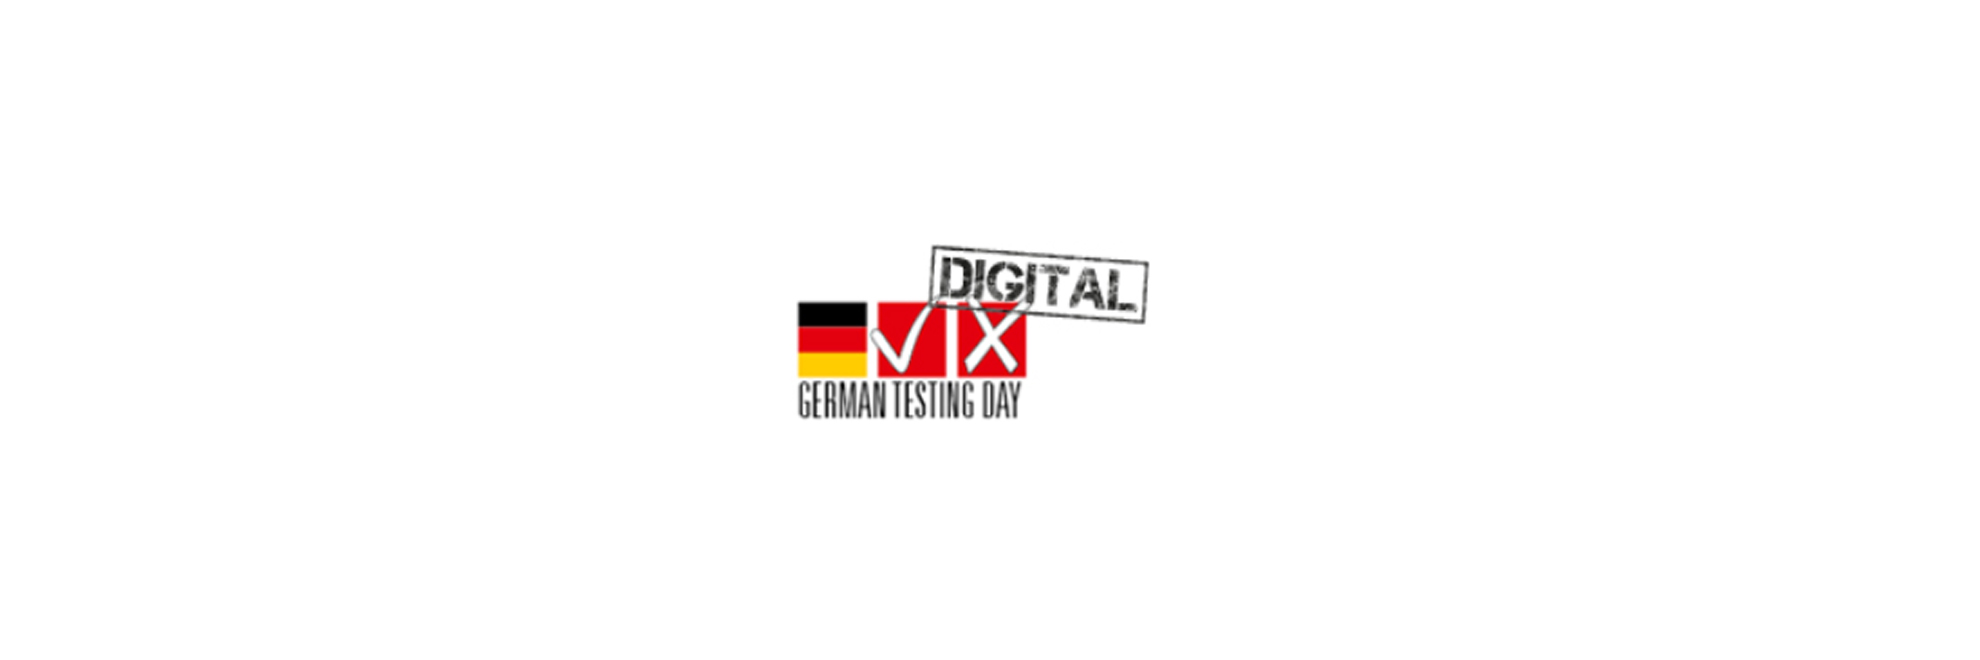 German Testing Day